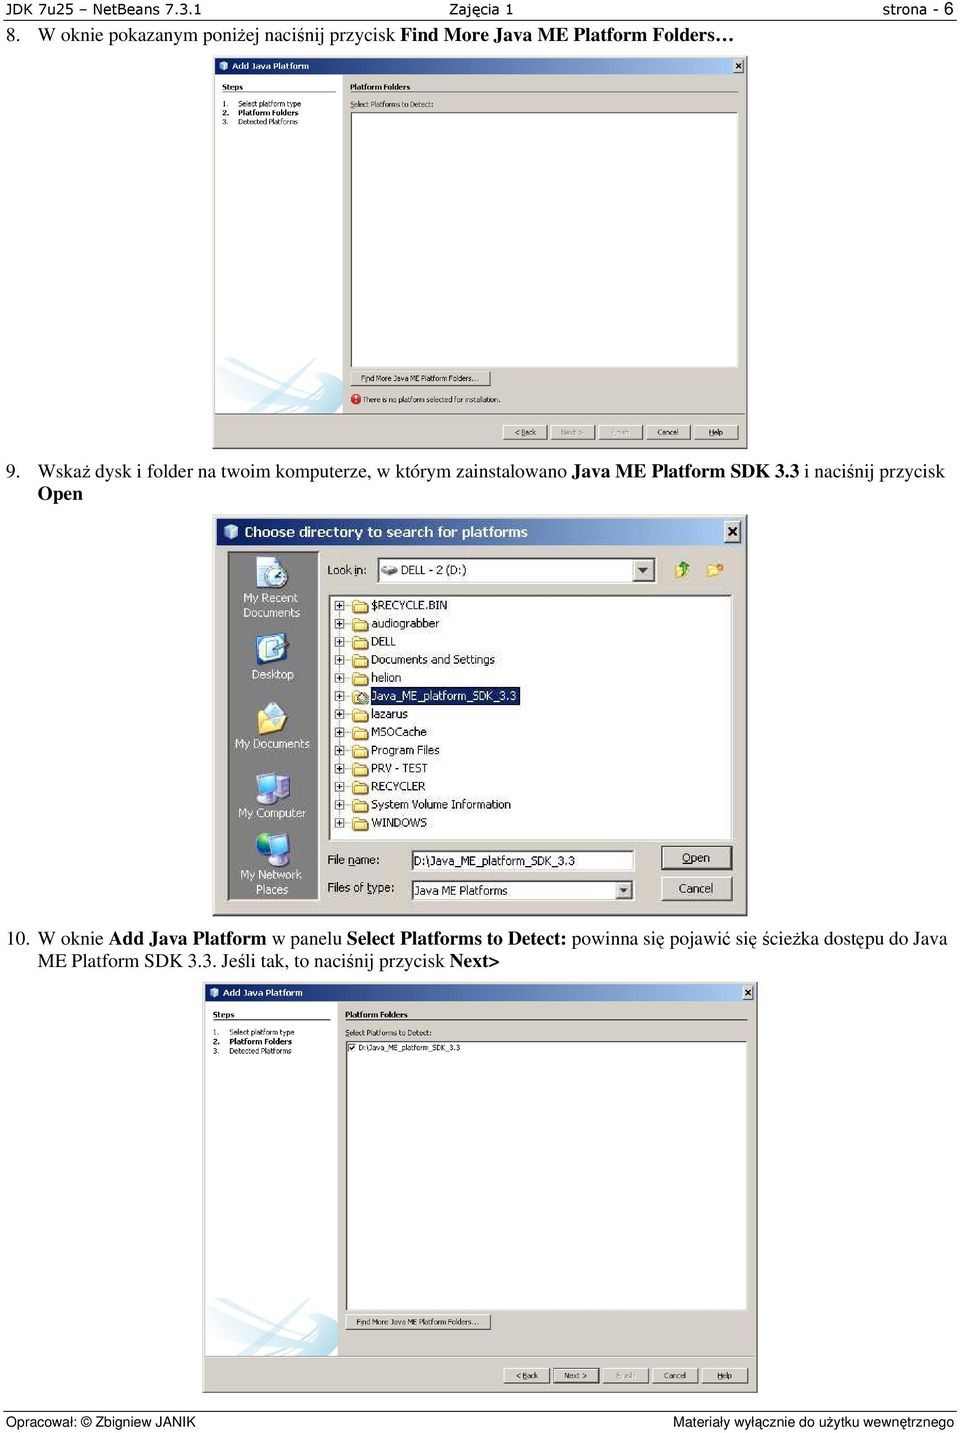 Wskaż dysk i folder na twoim komputerze, w którym zainstalowano Java ME Platform SDK 3.